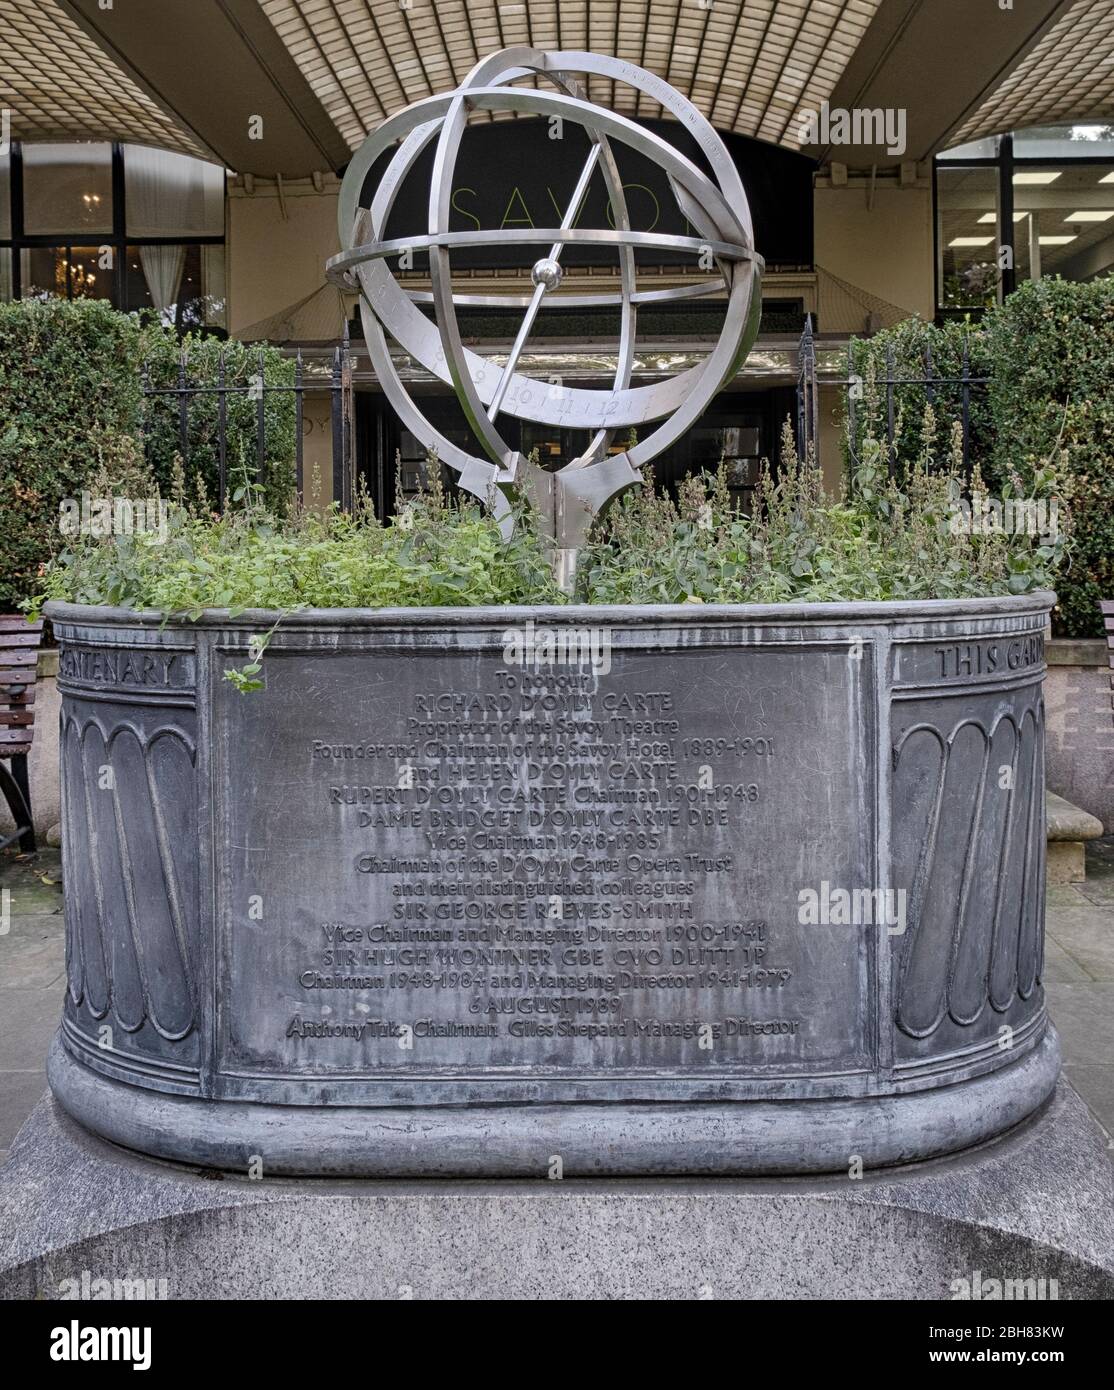 D'Oyly carte Armerillary Sphere, un quadrante ornato, un memoriale della compagnia leggera d'opera con sede nel vicino Savoy Hotel, City of Westminster, Londra Foto Stock